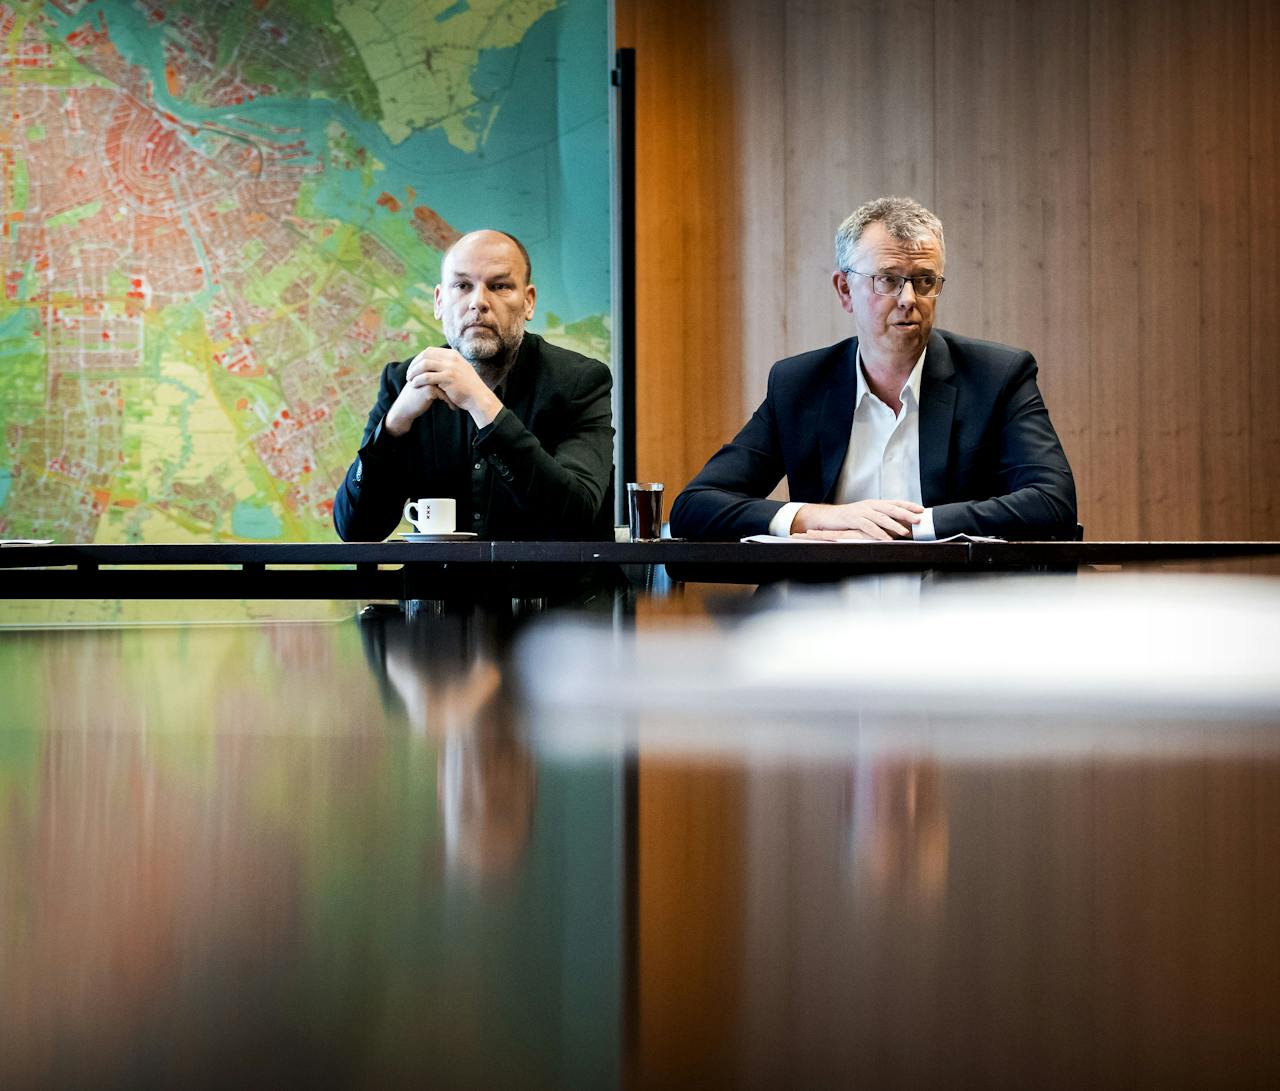 2018-03-27 15:04:25 AMSTERDAM - GroenLinks-lijsttrekker Rutger Groot Wassink (L) met informateur Maarten van Poelgeest tijdens een ontmoeting in de Stopera. GroenLinks is de grootste partij in de hoofdstad na de gemeenteraadsverkiezingen. ANP KOEN VAN WEEL